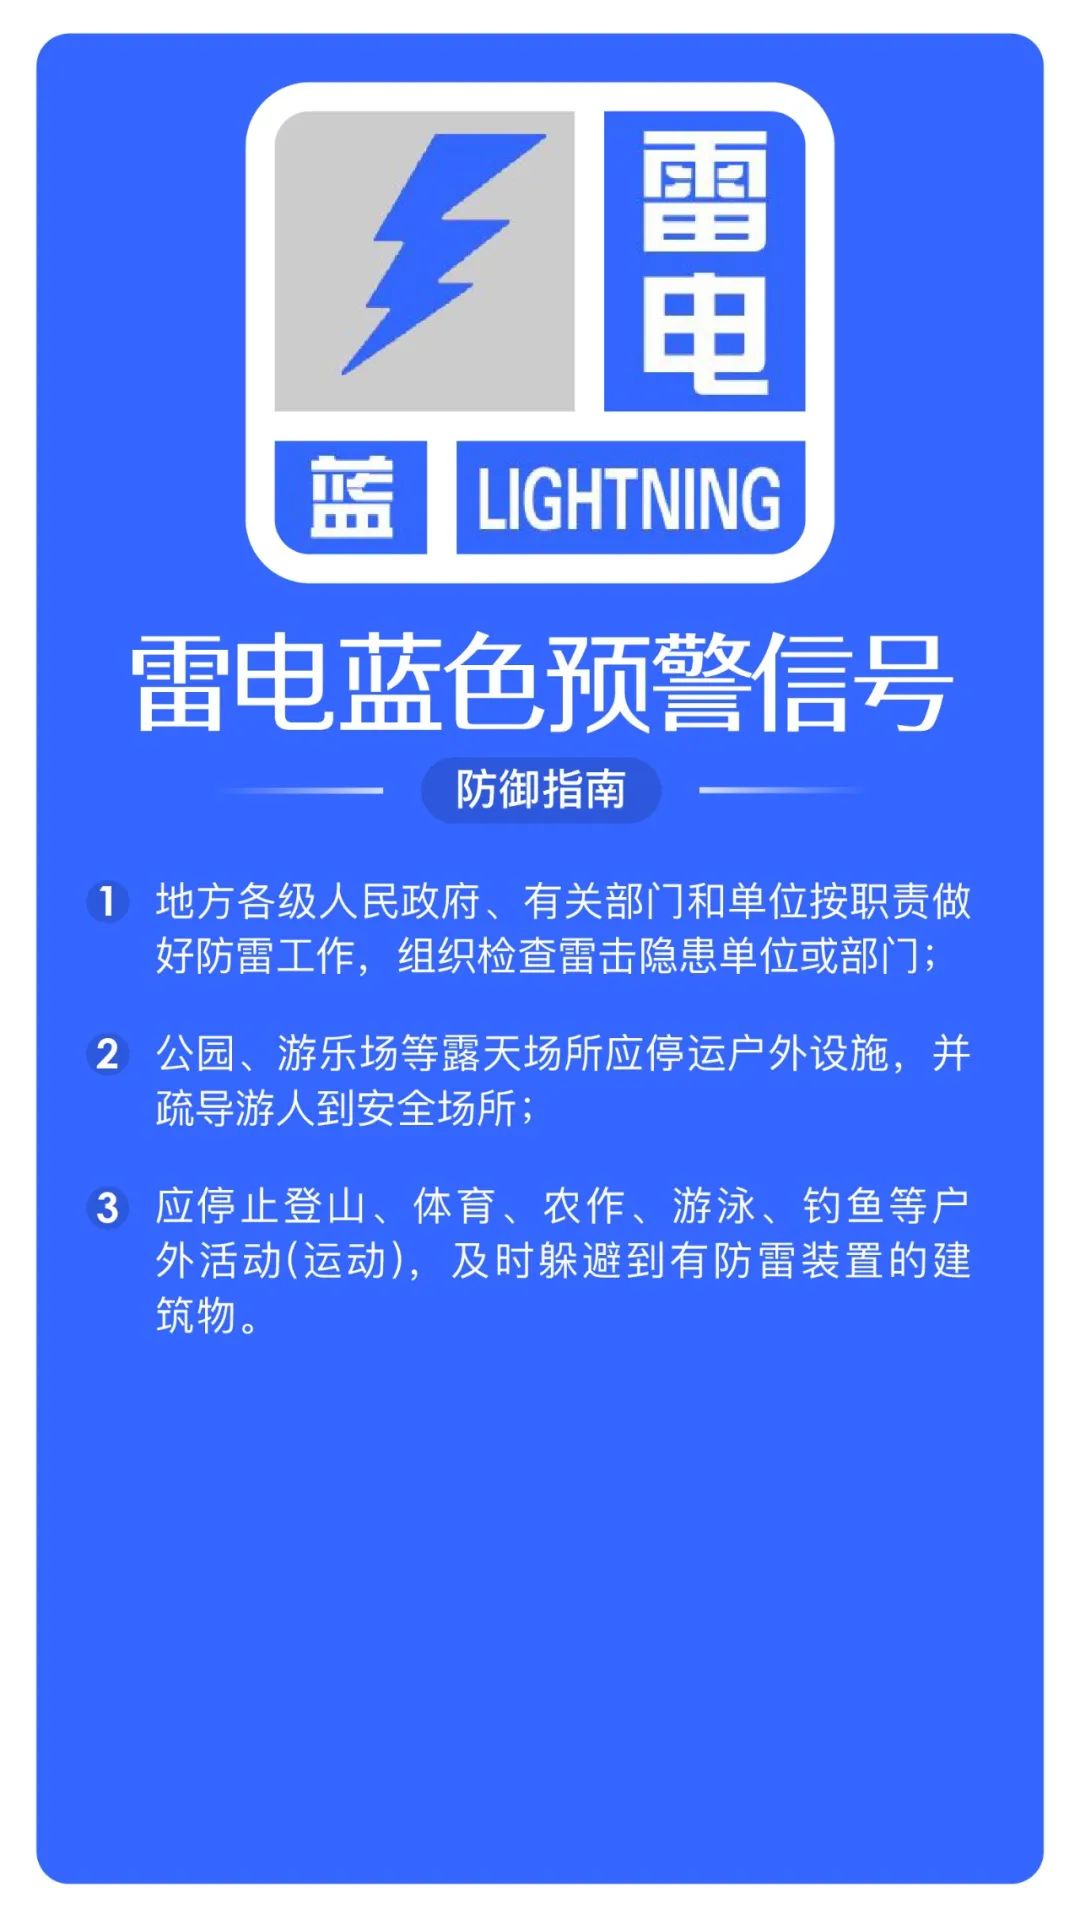 北京发布雷电蓝色预警,请做好防雷工作